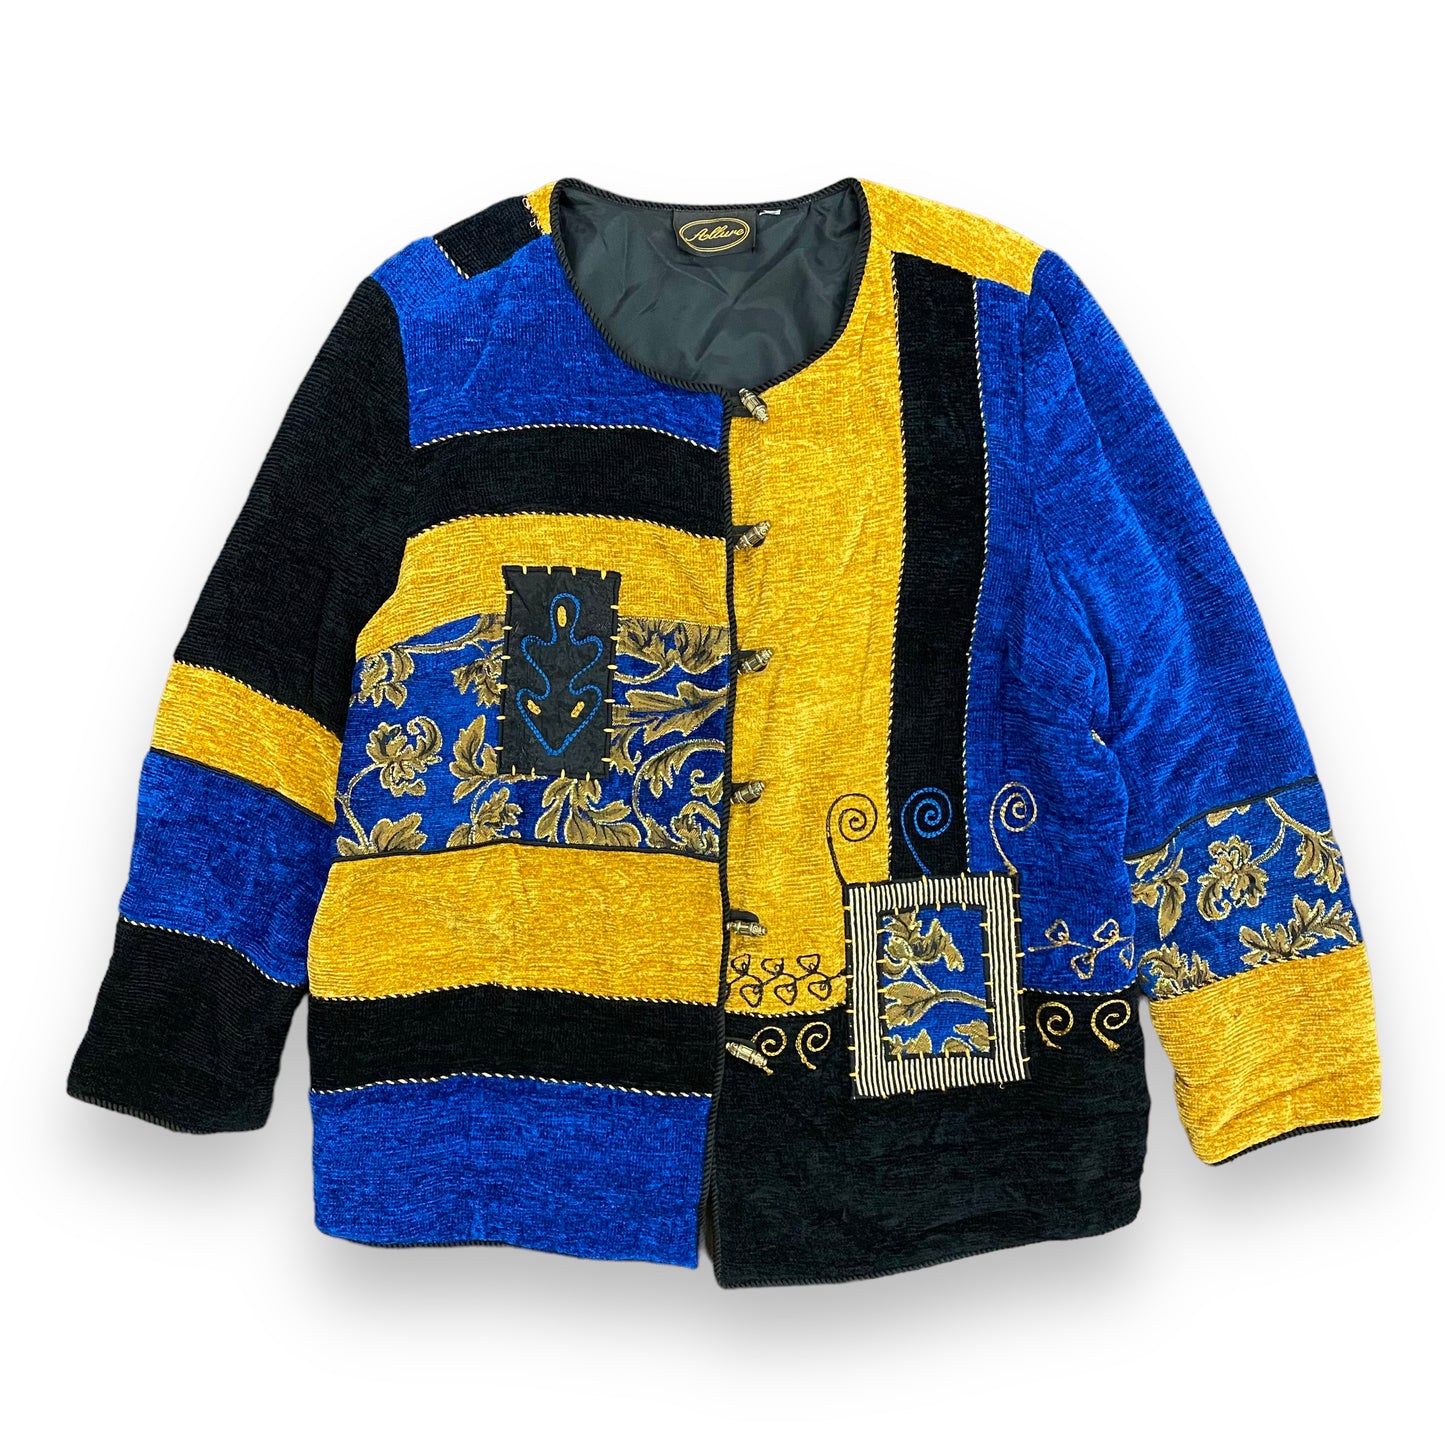 Vintage Embroidered Blue & Gold Tapestry Jacket - Size Large